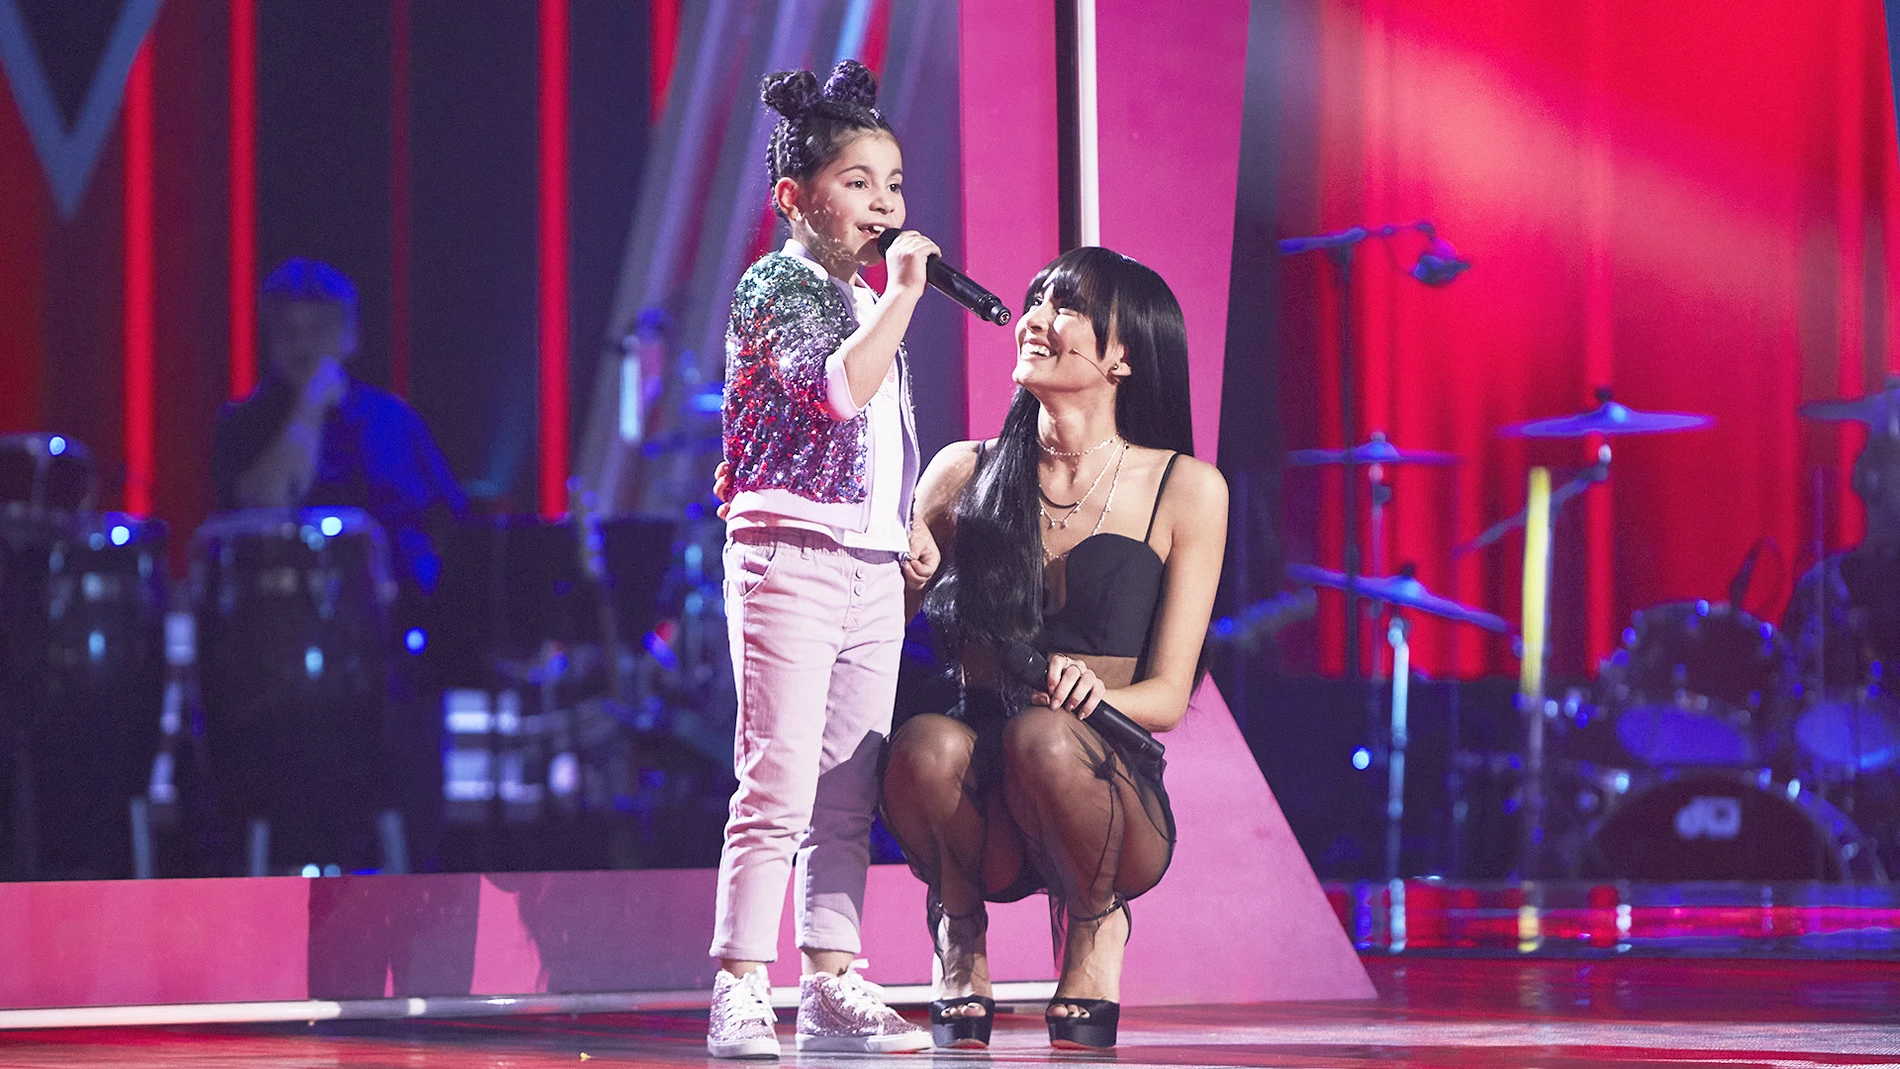 Aitana y Macarena, el dúo más tierno de ‘La Voz Kids’ cantando ’11 razones’ 